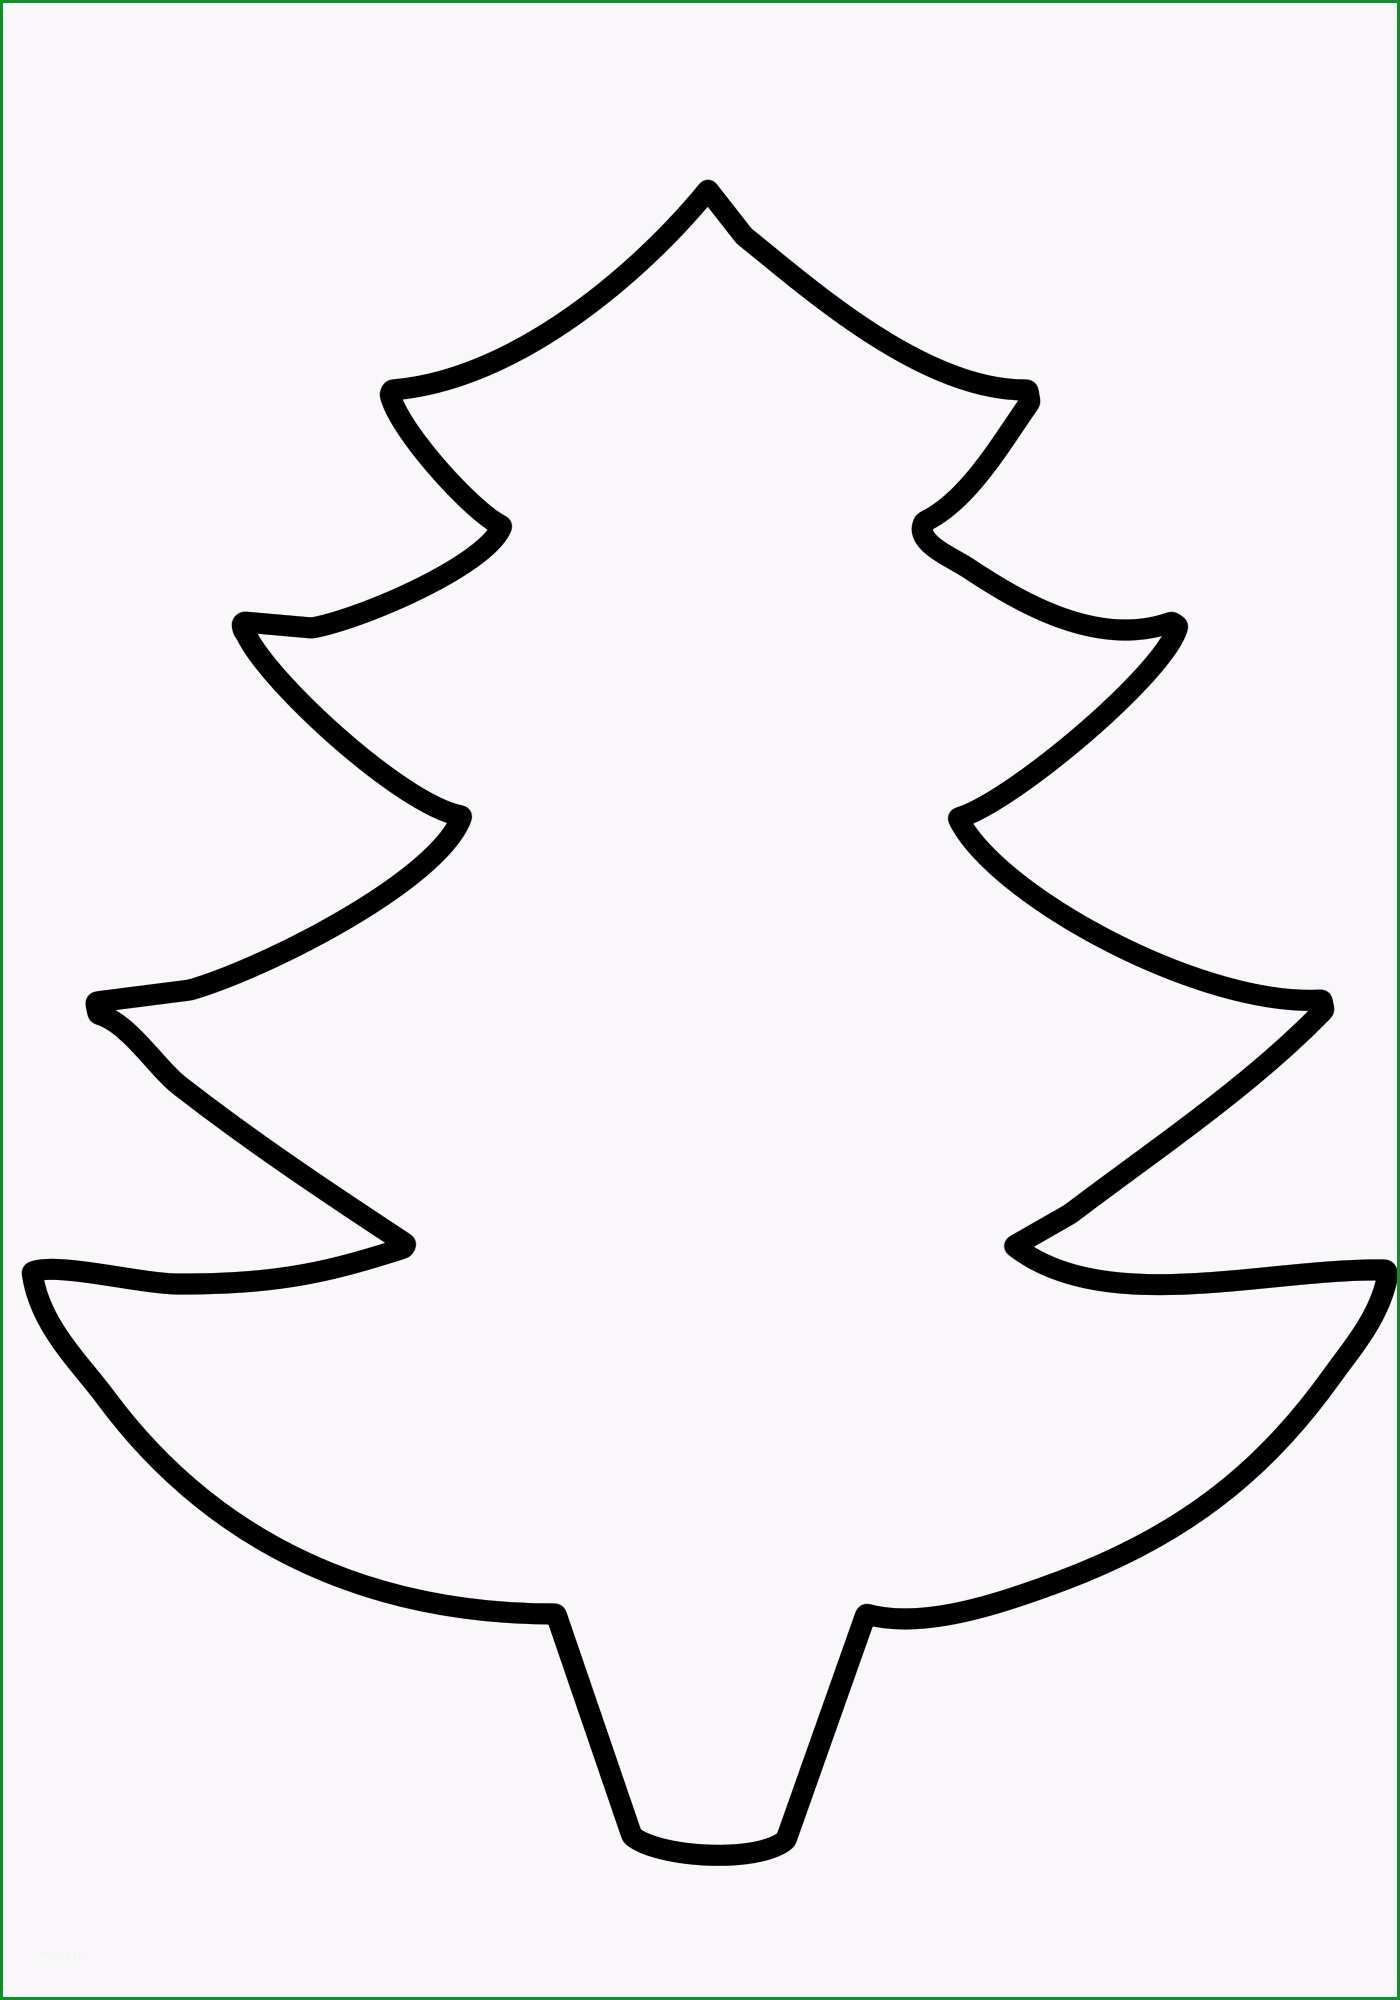 weihnachtsbaum vorlagen dekoking avec tannenbaum vorlage zum ausdrucken et weihnachtsbaum vorlagen 19 6 tannenbaum vorlage zum ausdrucken sur la cat gorie home deko ideen